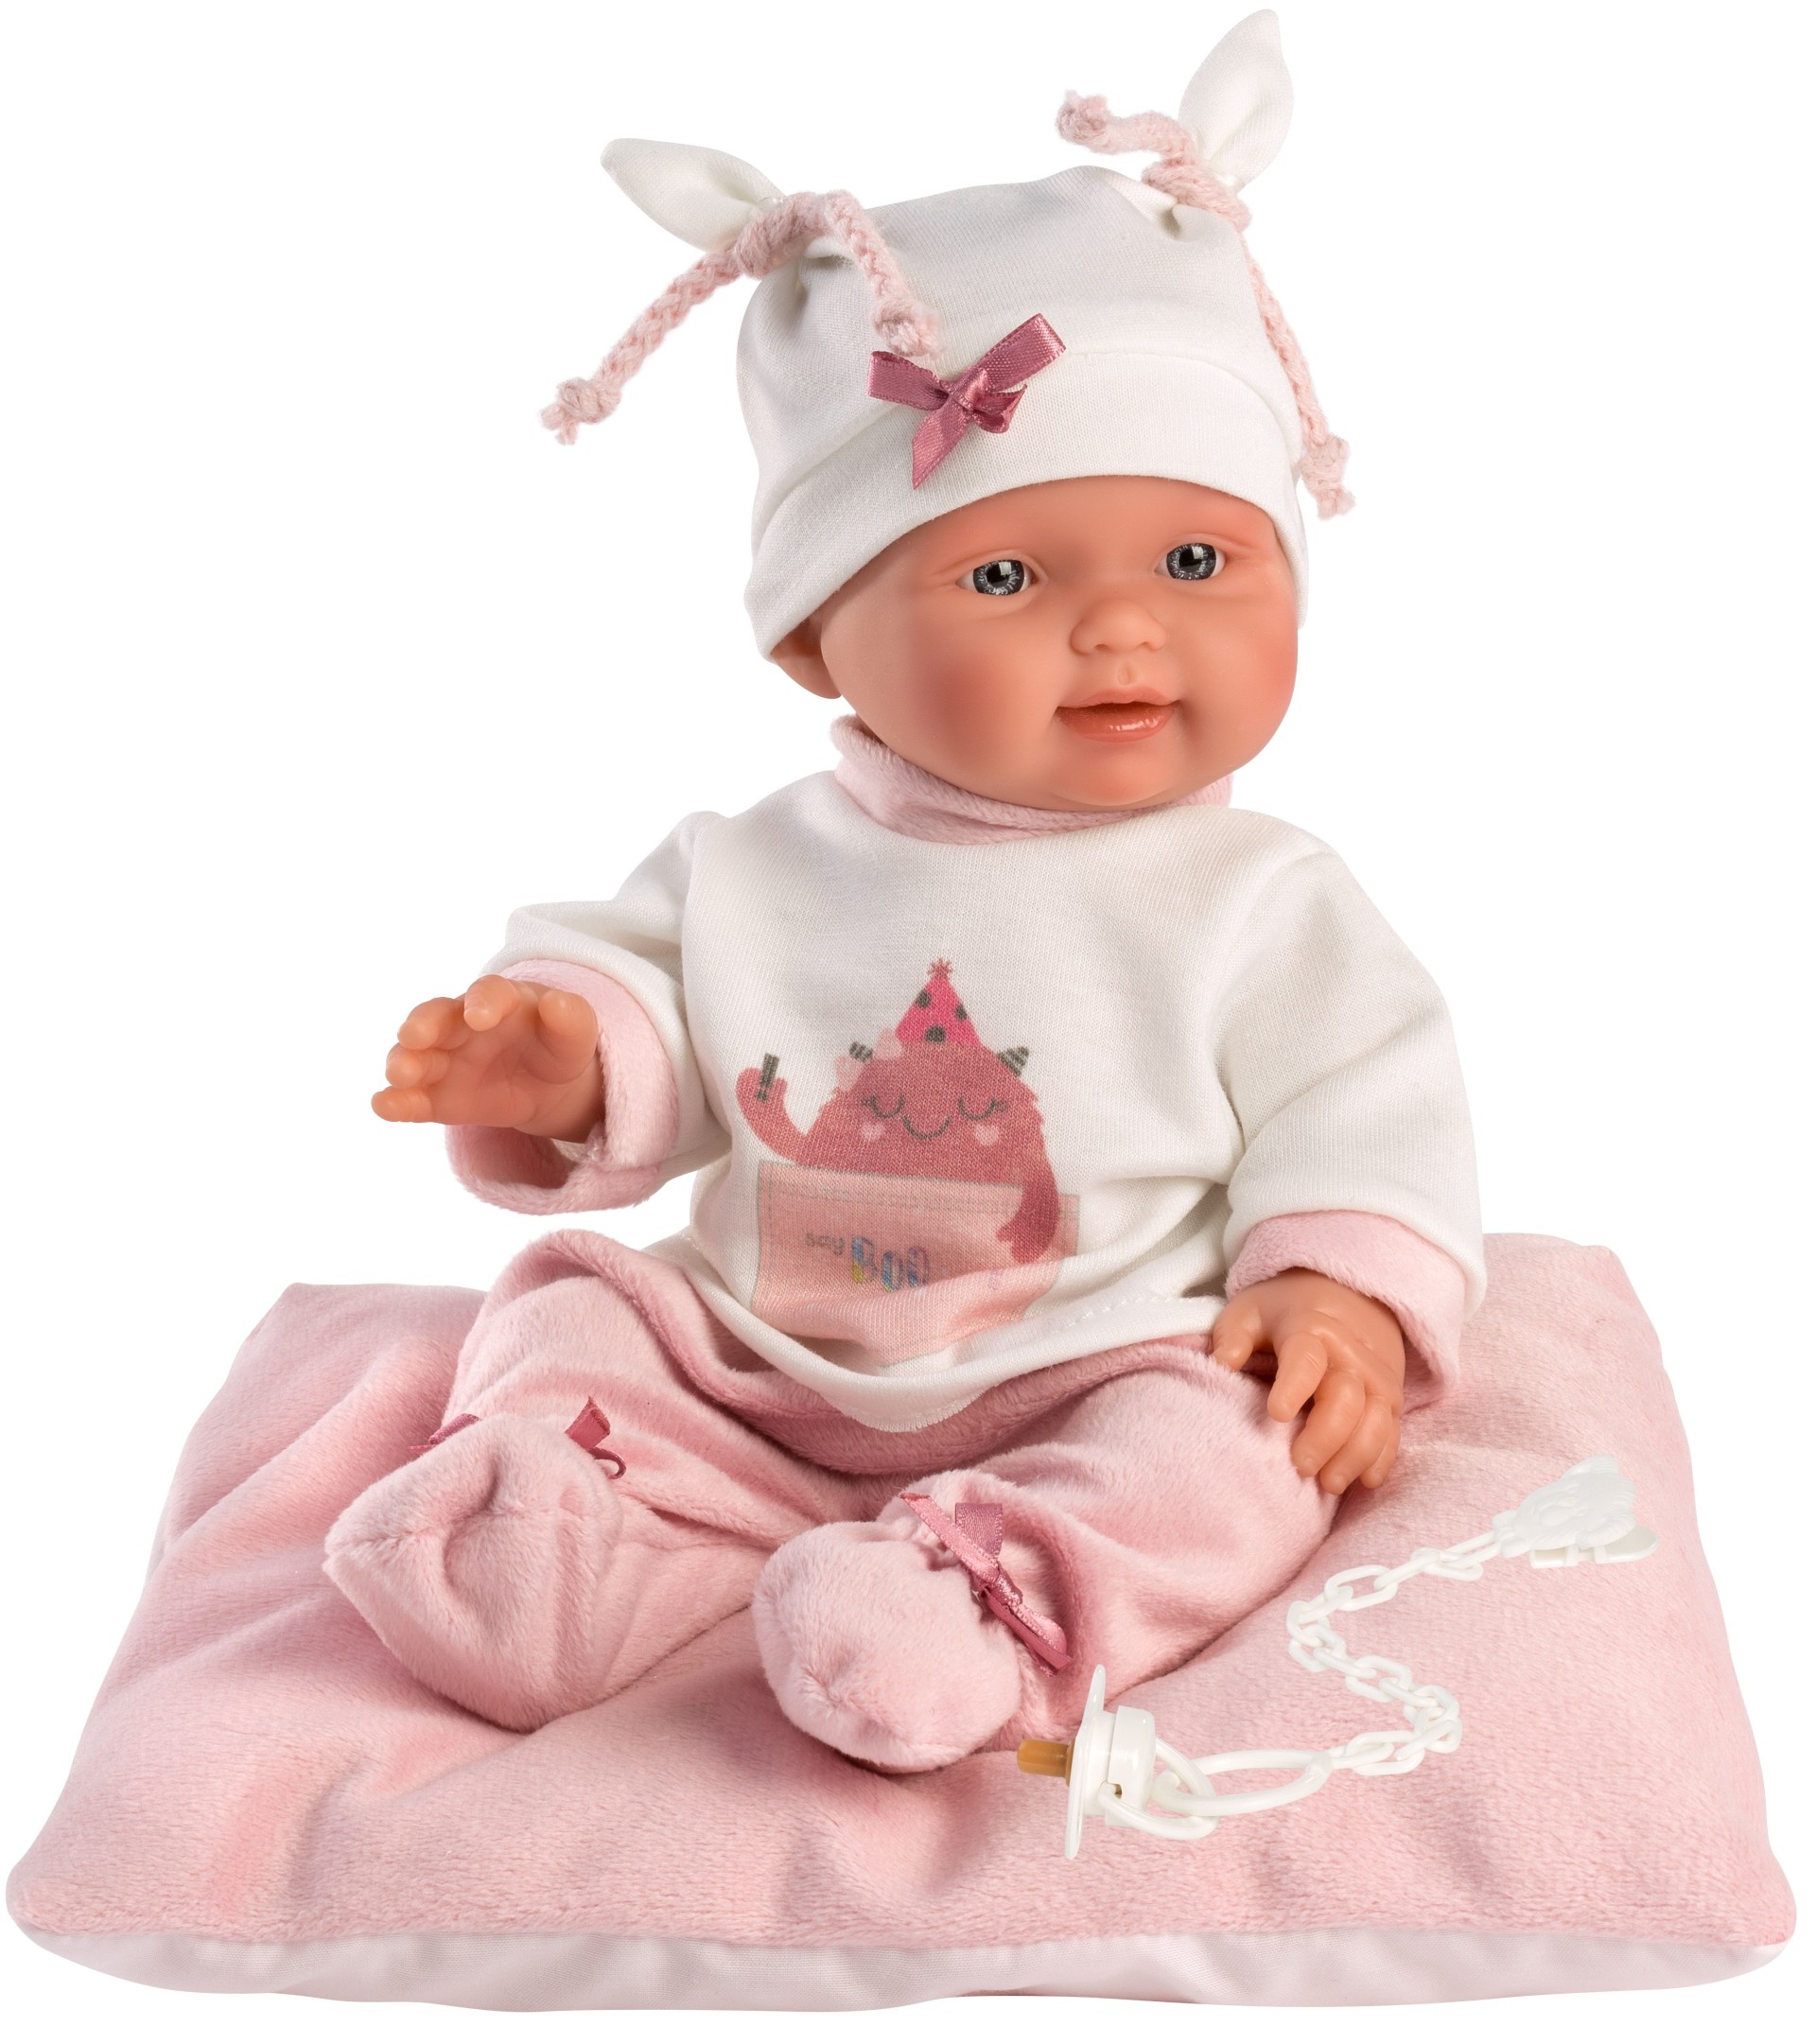 Κούκλα Μωρό Κορίτσι 26εκ Ροζ Ρούχα Και Μαξιλάρι, Llorens